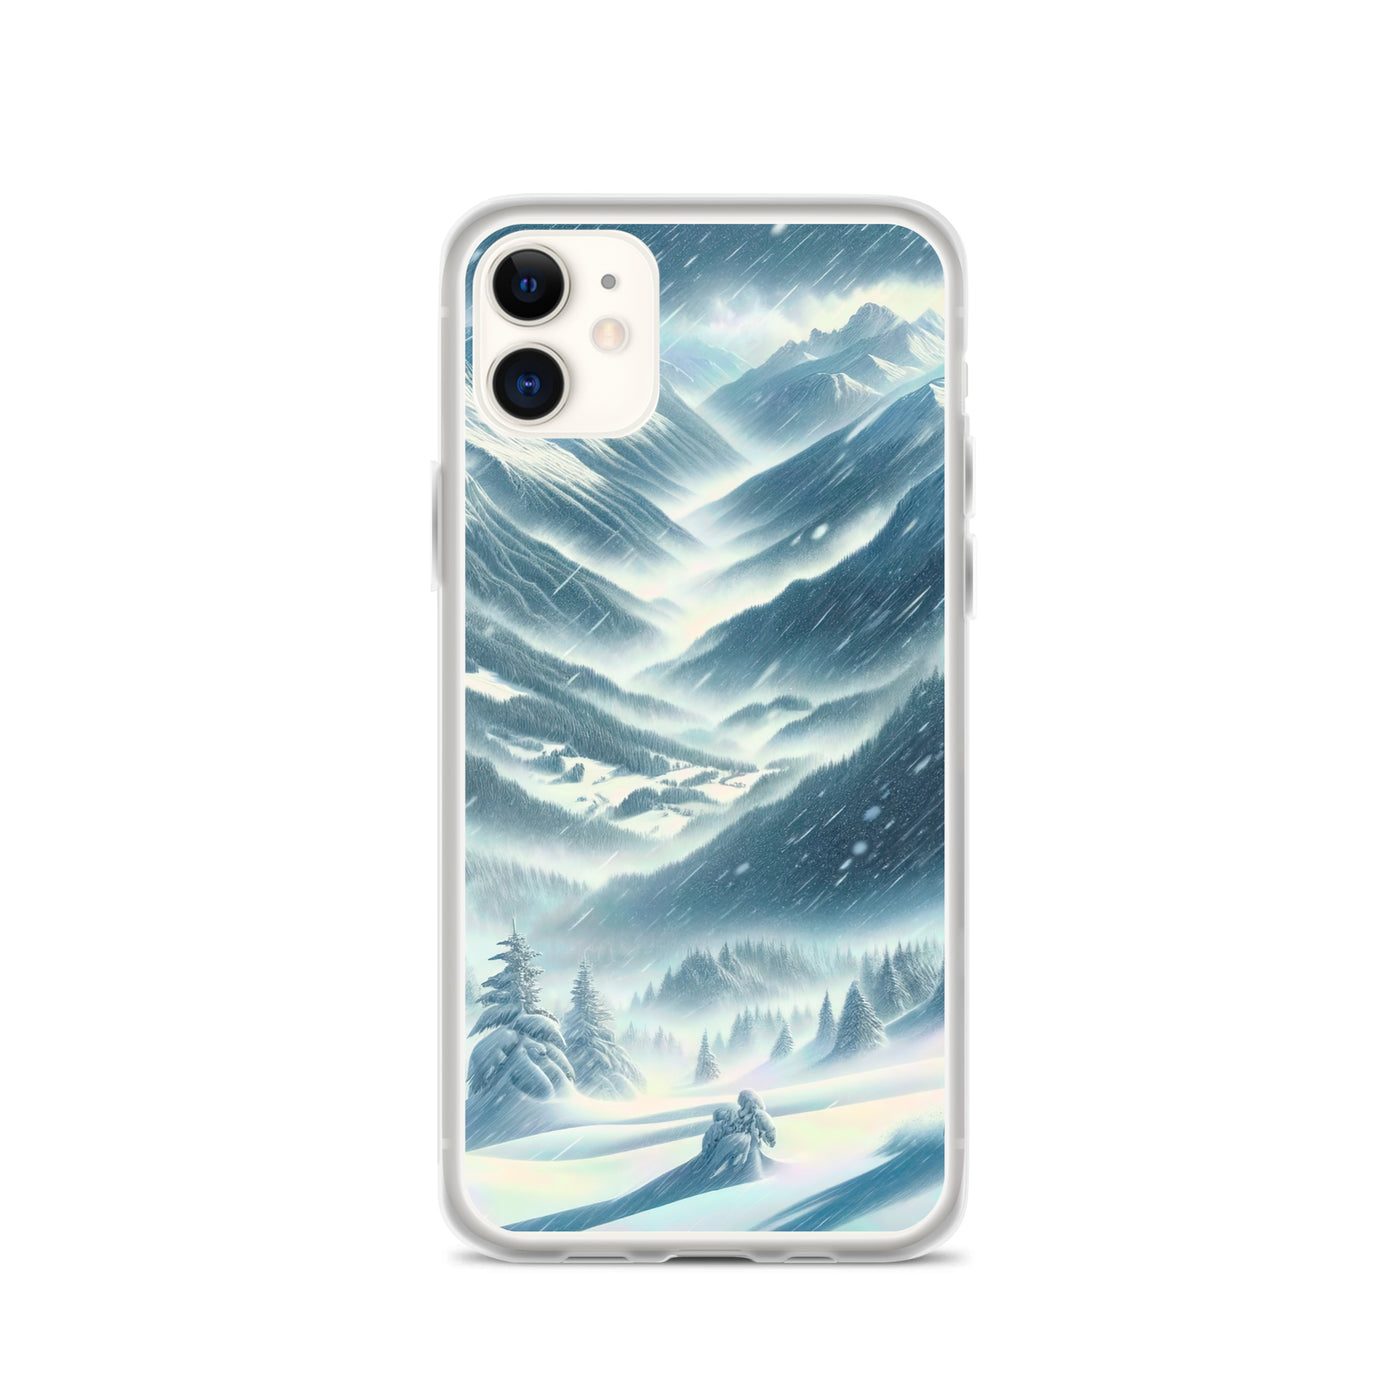 Alpine Wildnis im Wintersturm mit Skifahrer, verschneite Landschaft - iPhone Schutzhülle (durchsichtig) klettern ski xxx yyy zzz iPhone 11